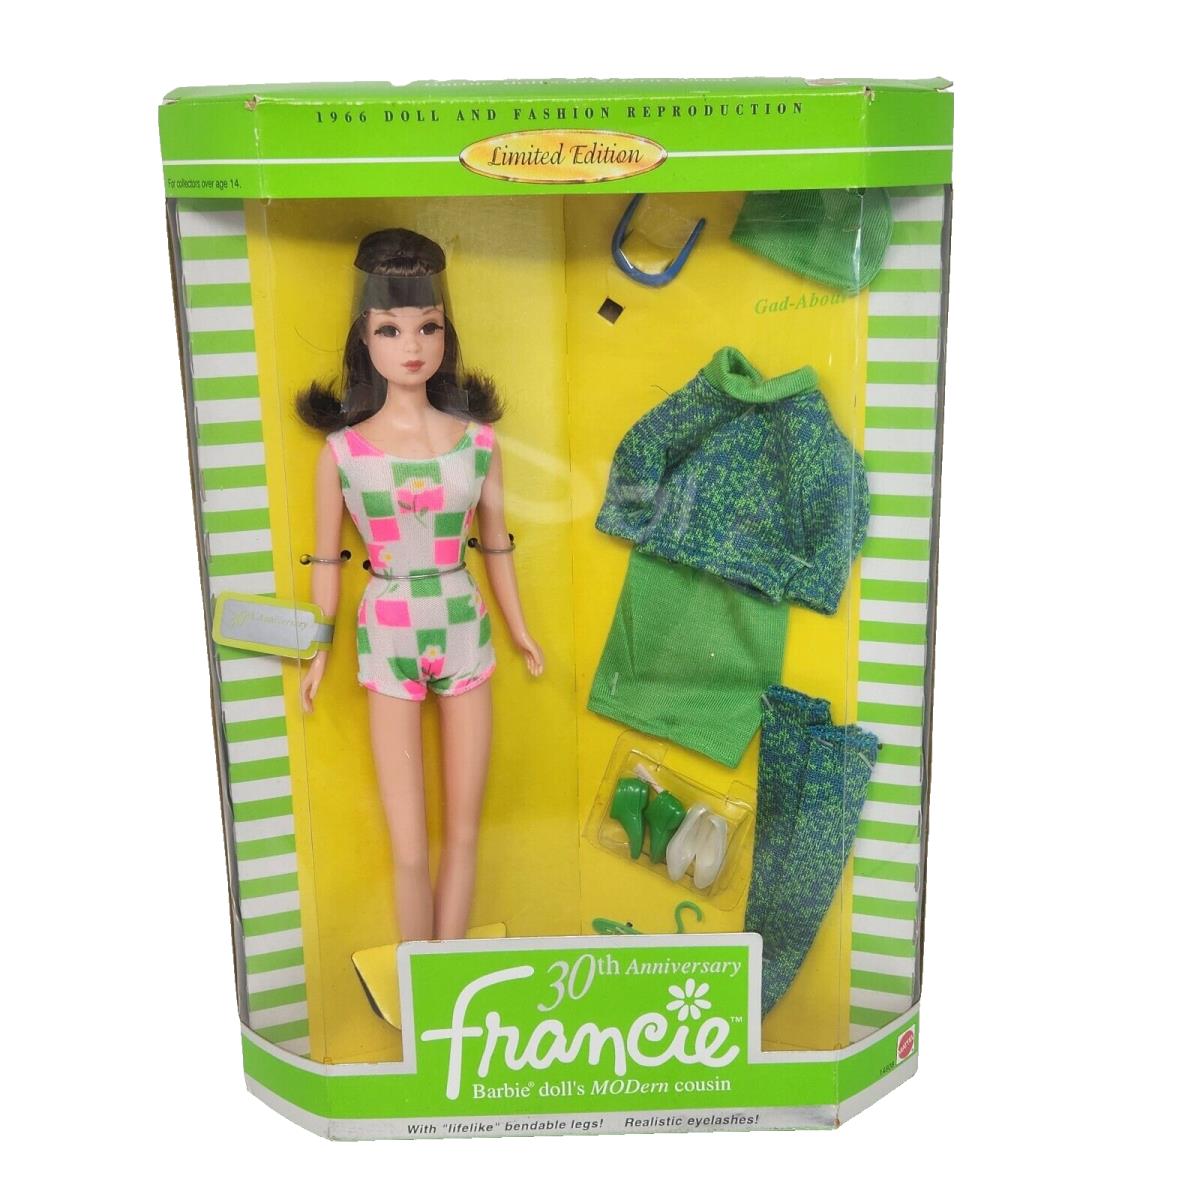 Vintage 1996 Francie Barbie Cousin 30TH Repro Doll Mattel 14608 Nos Box